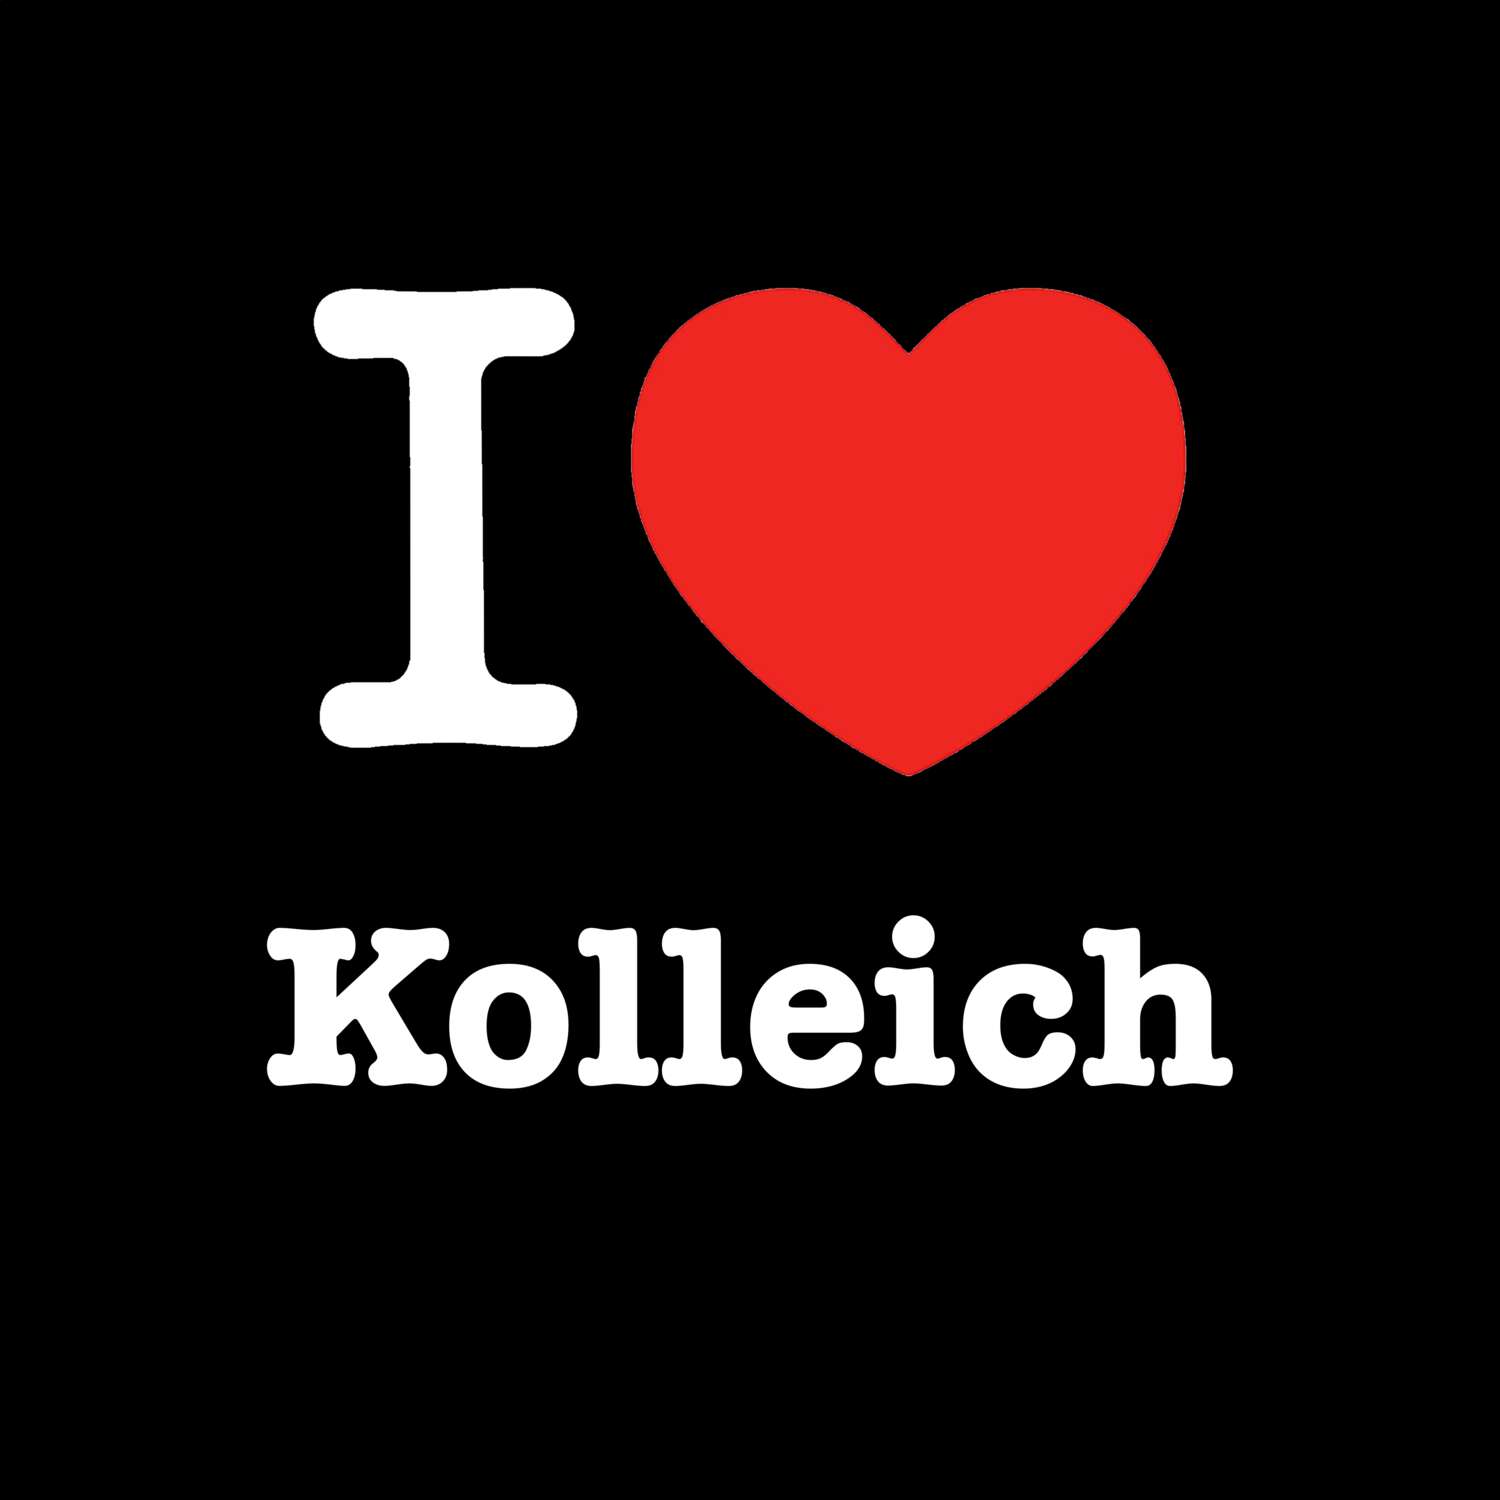 Kolleich T-Shirt »I love«